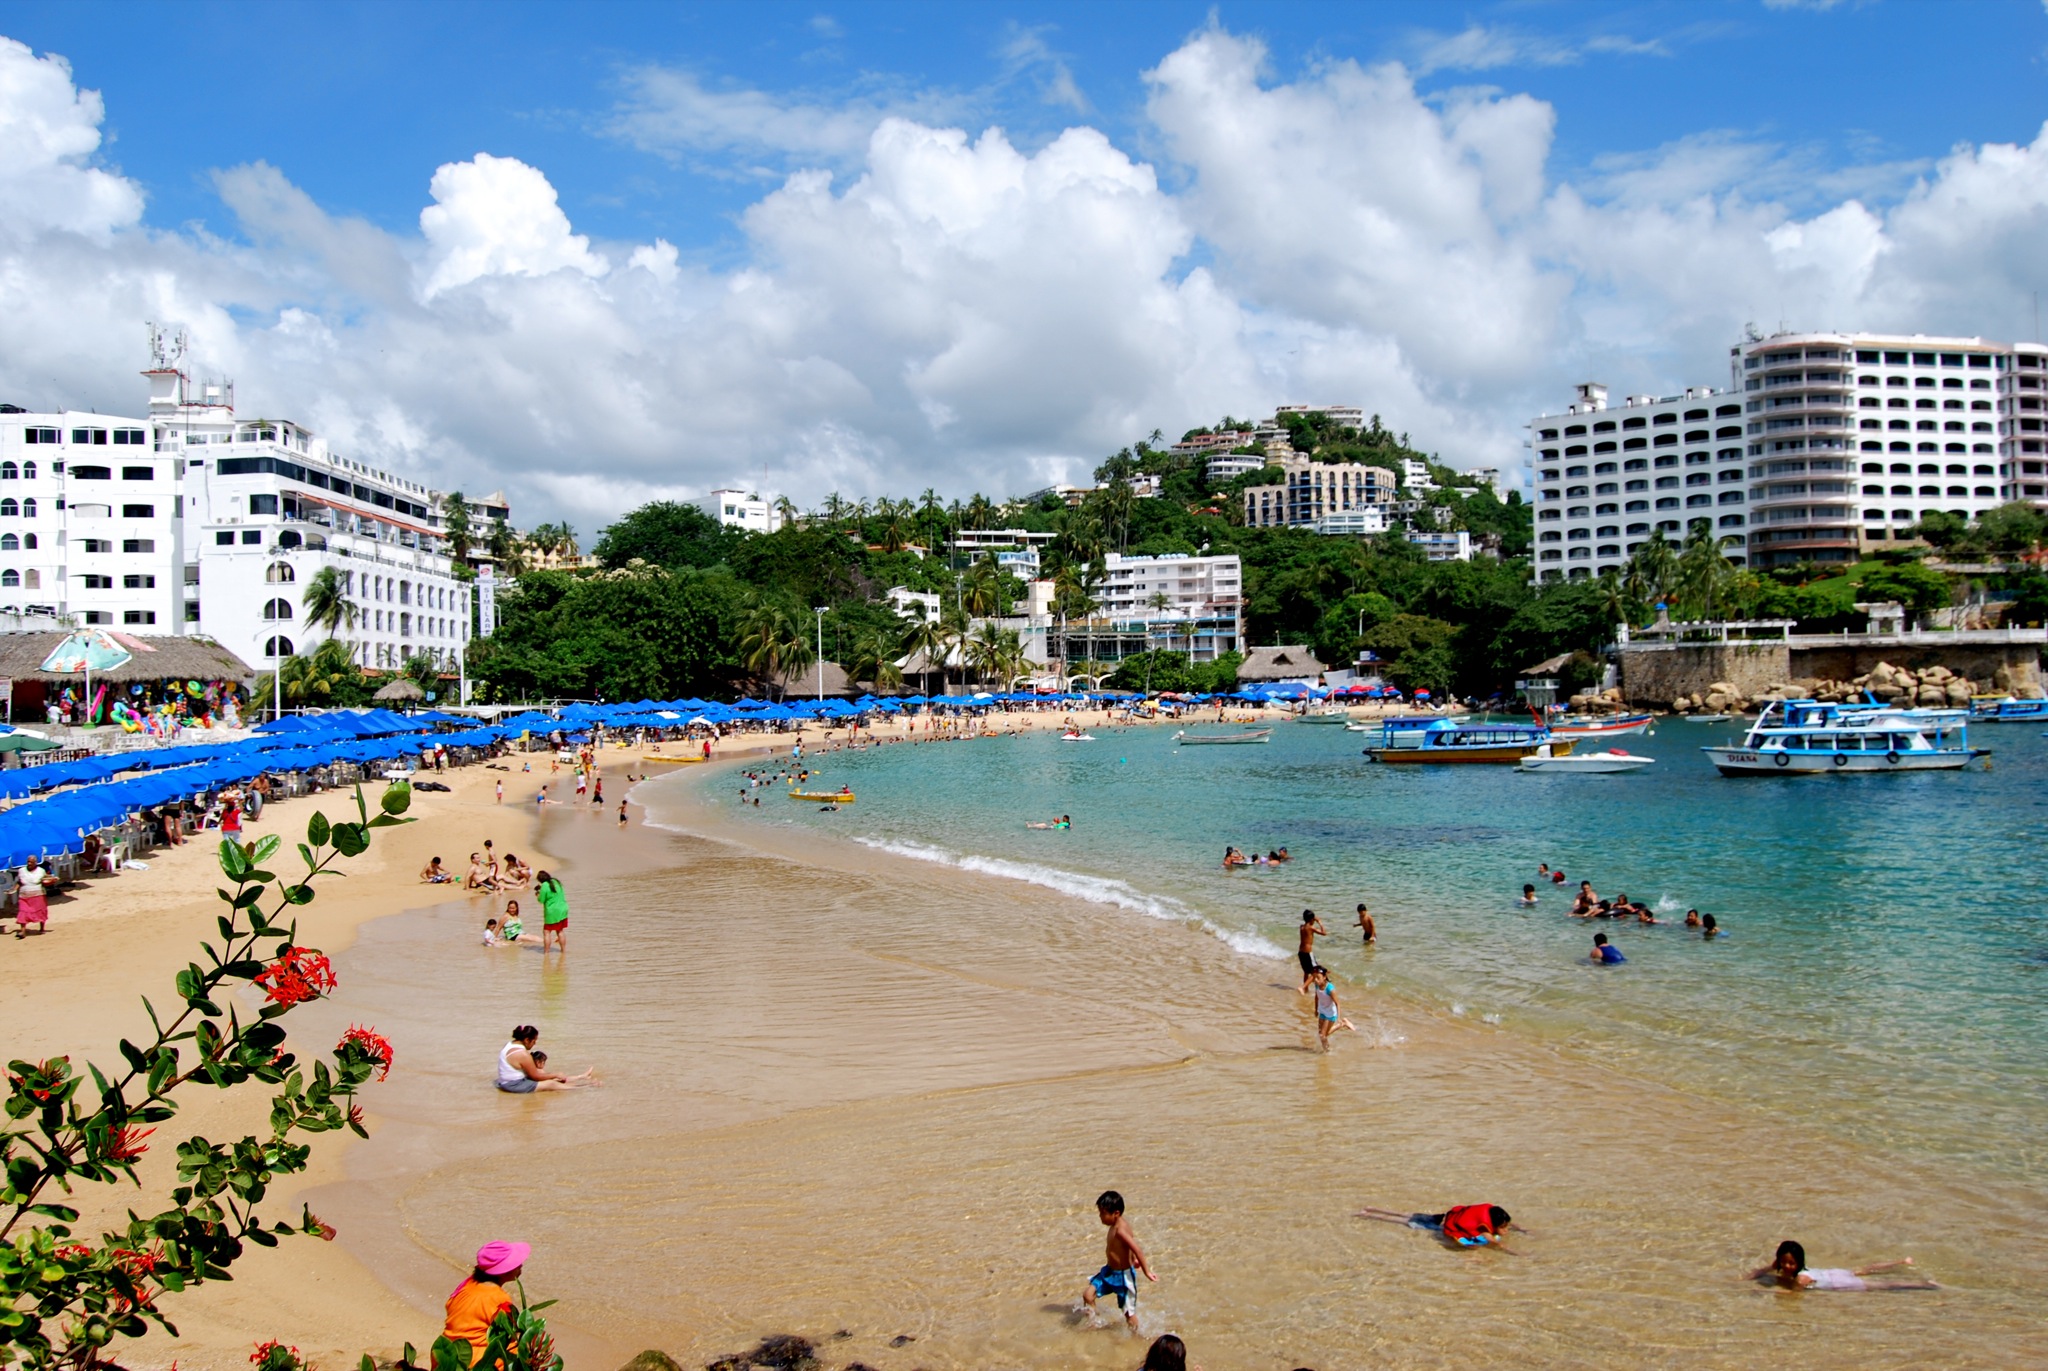  Acapulco espera la visita de 550 mil turistas en verano